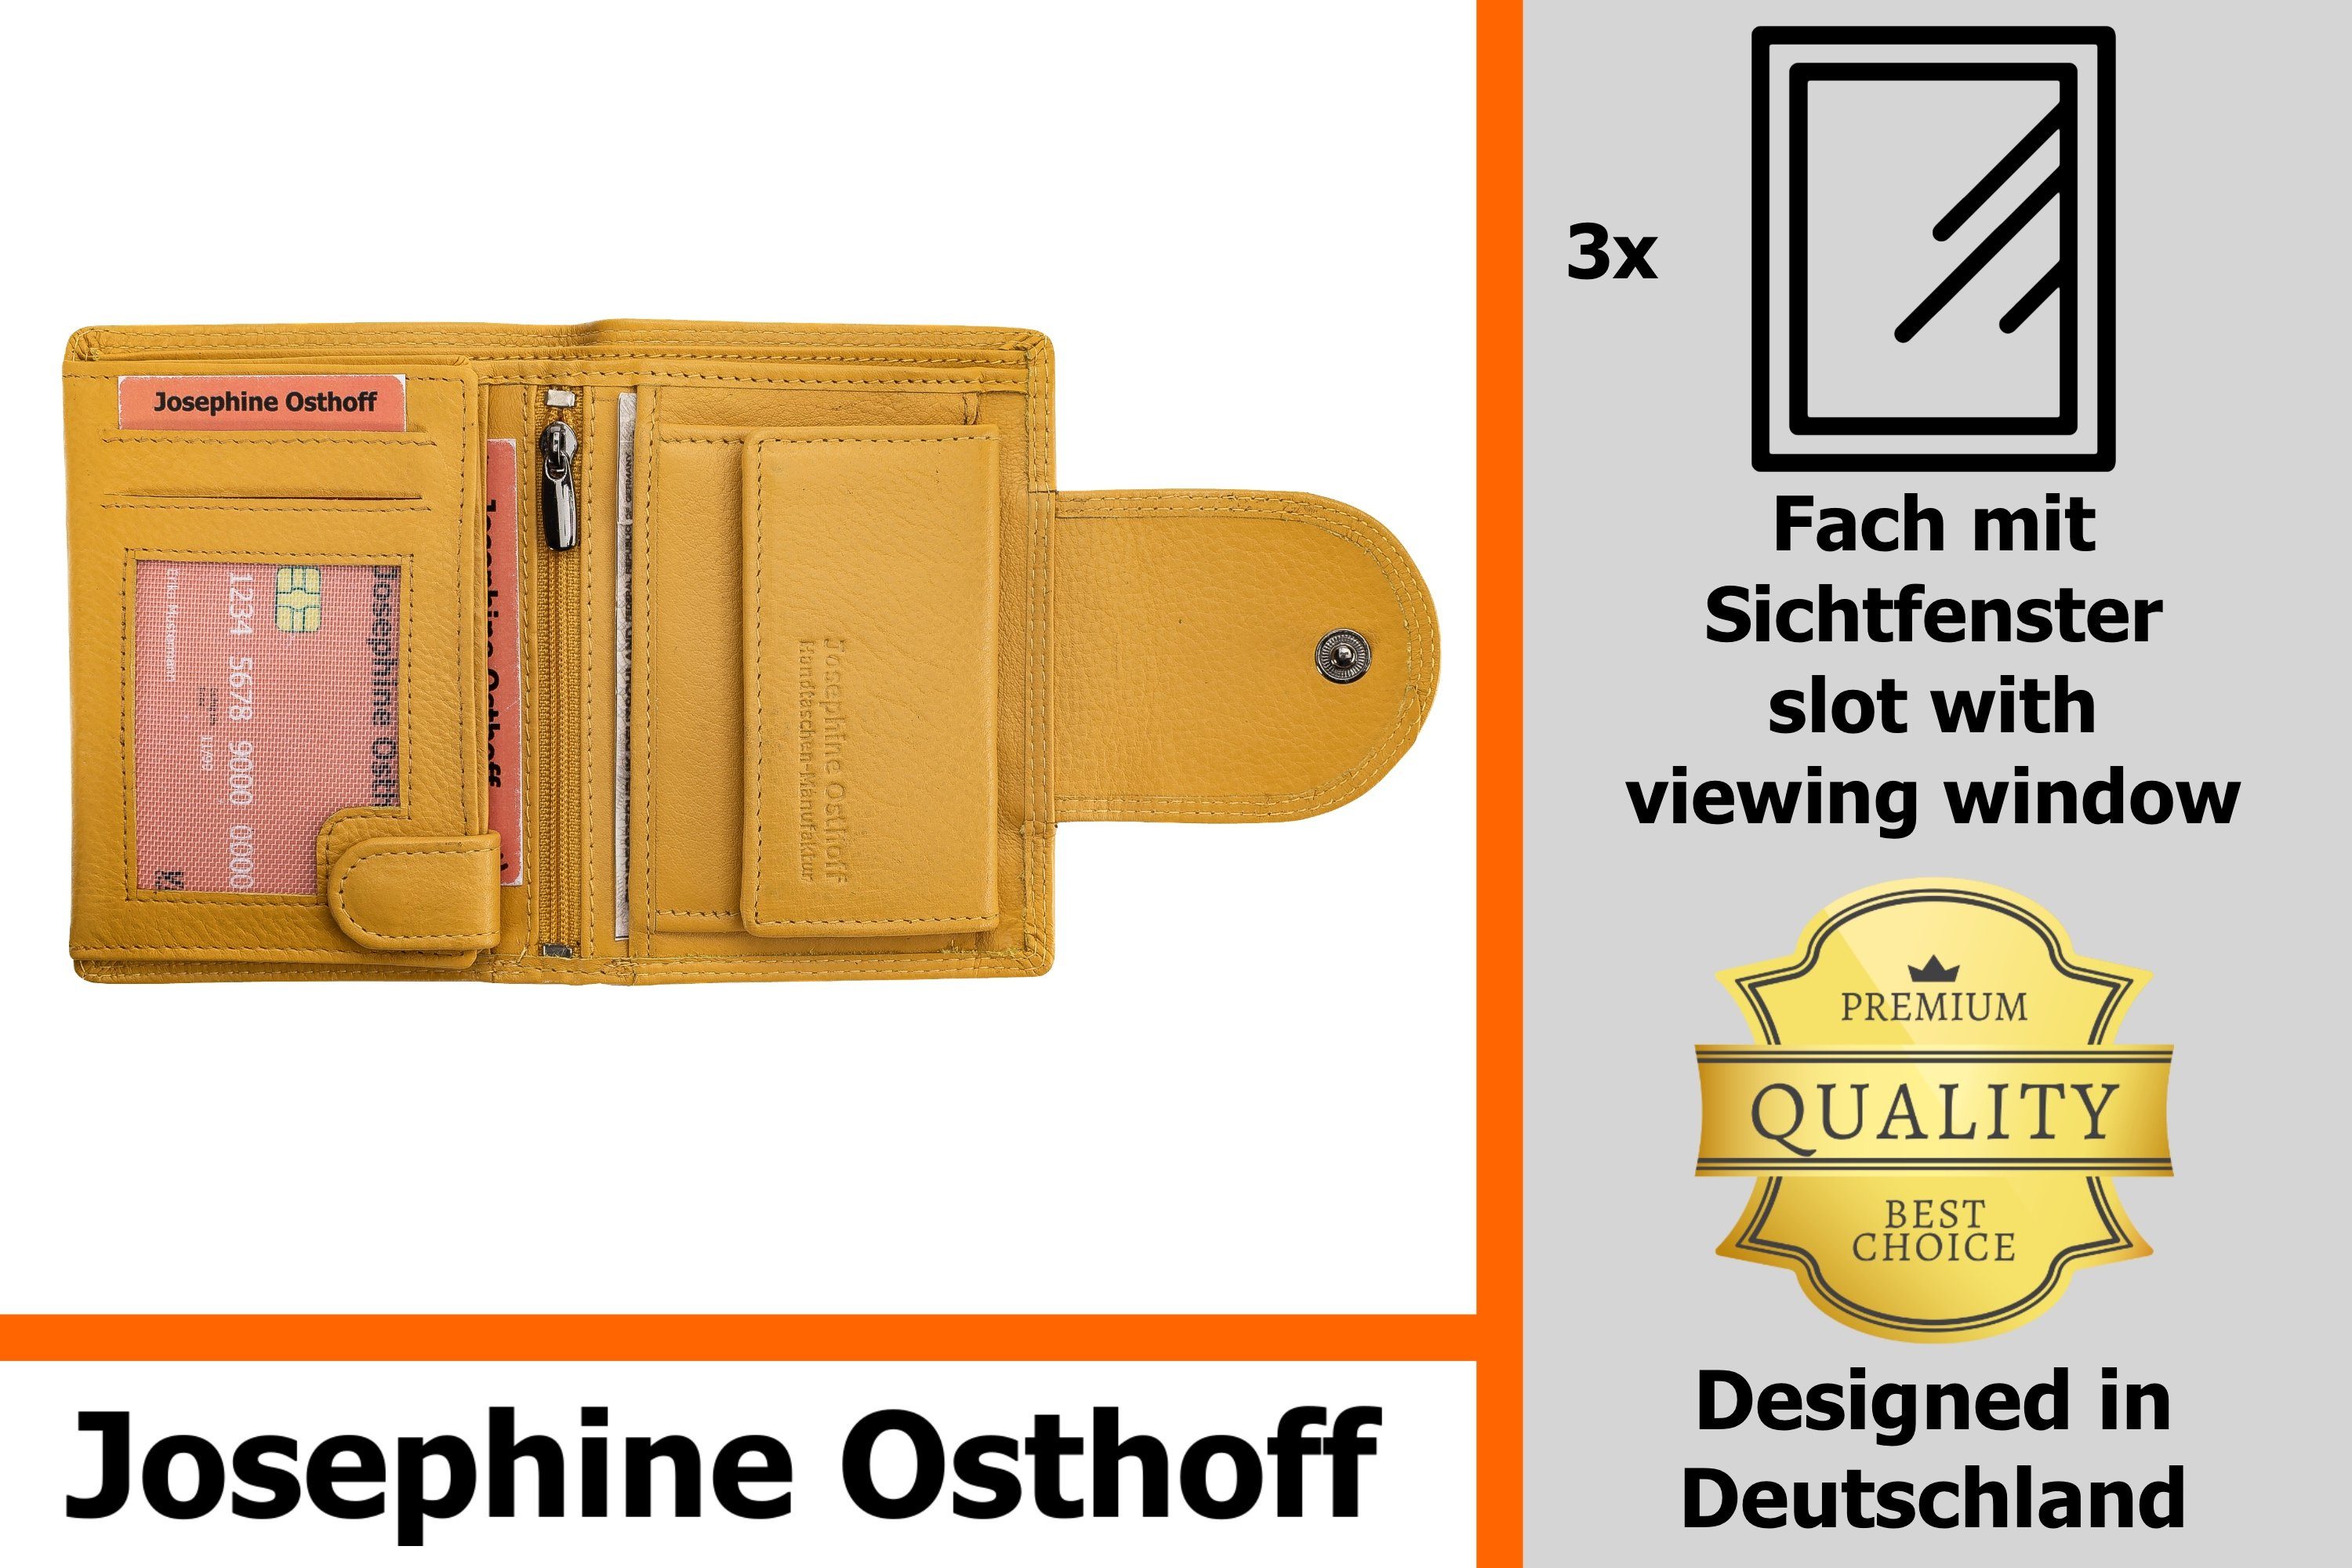 Josephine Osthoff Brieftasche gelb Wiener Geldbörse Minibrieftasche